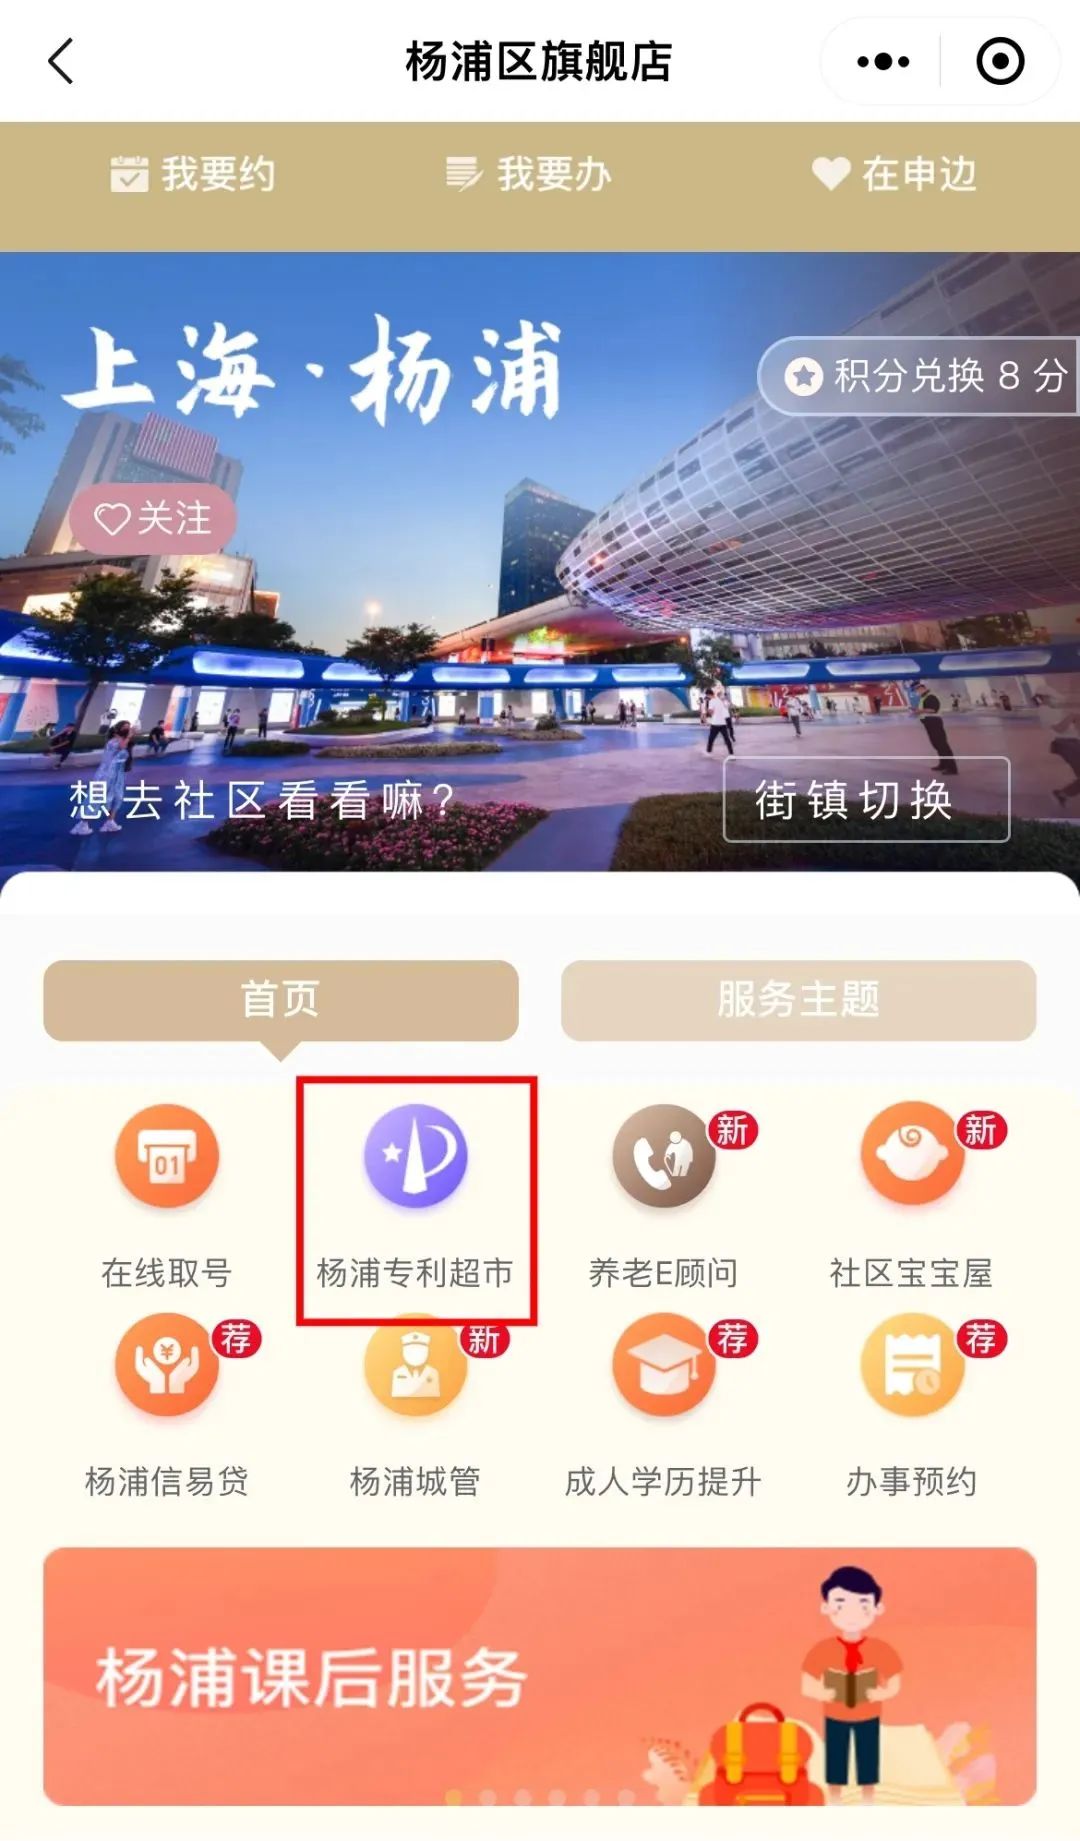 “杨浦专利超市”开进“随申办” 一键直通上技所专利运营服务